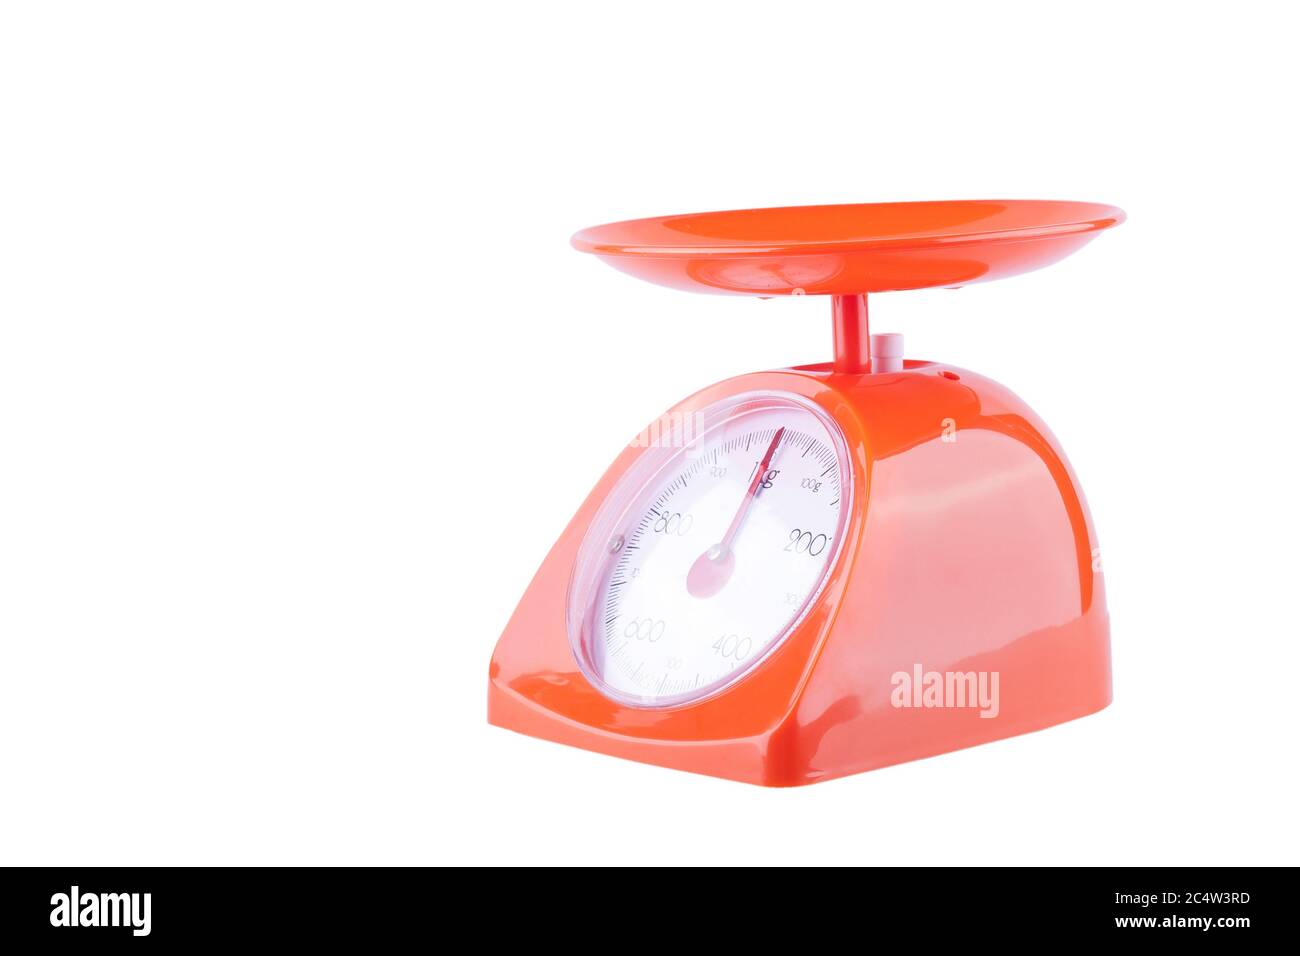 Les balances orange de cuisine sont mesurées en kilogrammes sur fond blanc objet d'équipement de cuisine isolé Banque D'Images